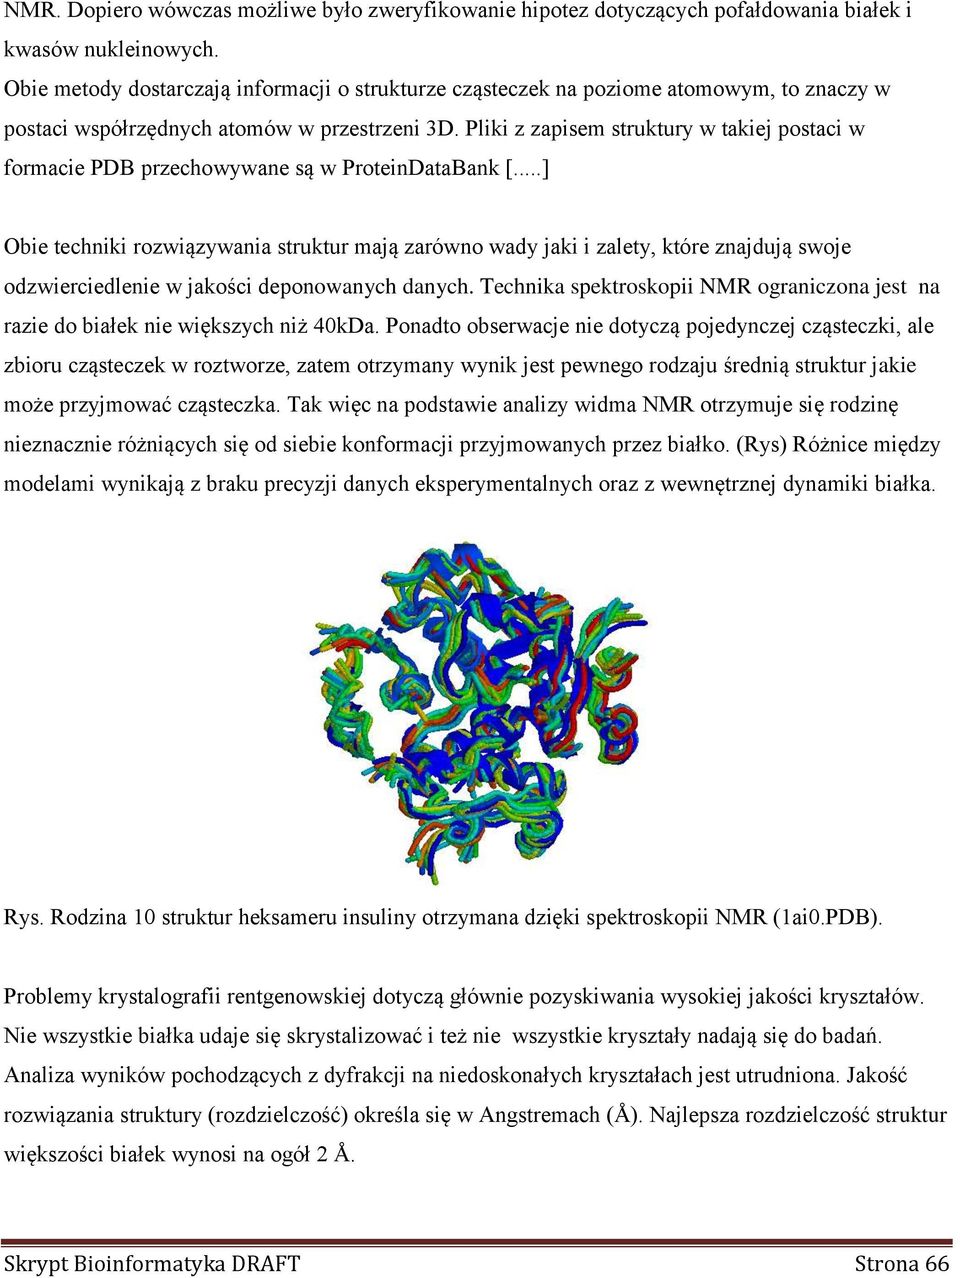 Pliki z zapisem struktury w takiej postaci w formacie PDB przechowywane są w ProteinDataBank [.